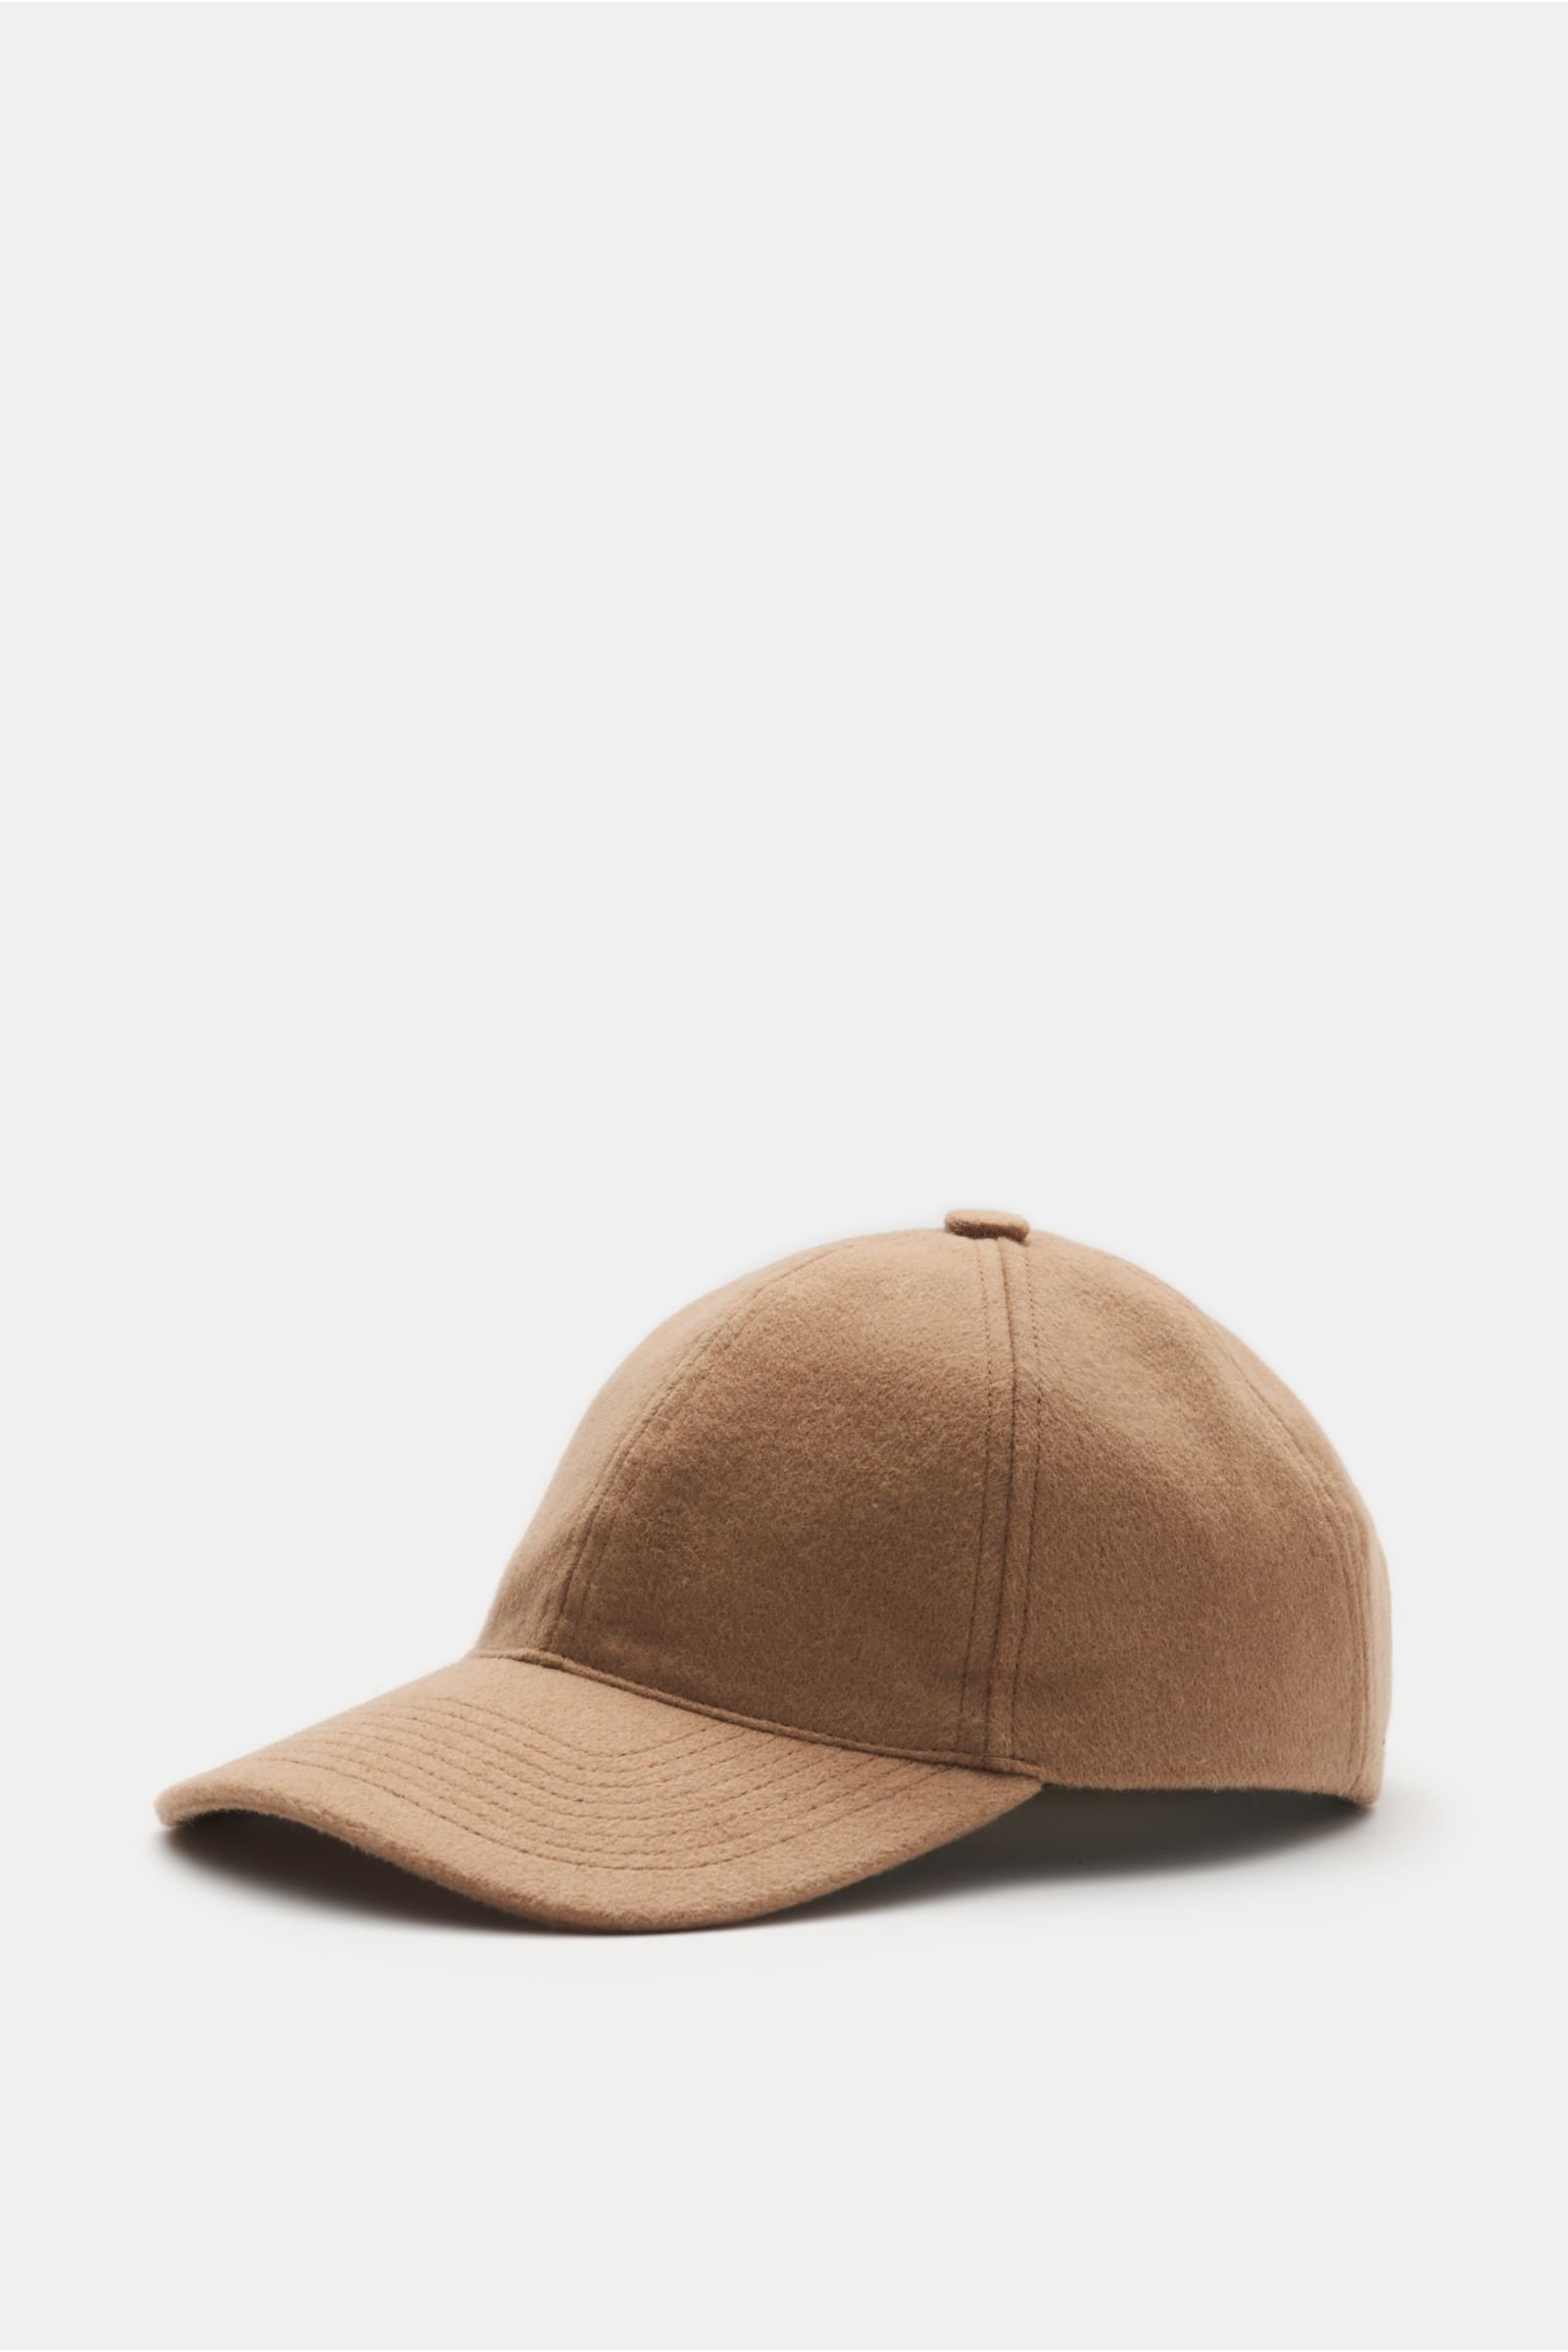 Cashmere baseball cap light brown